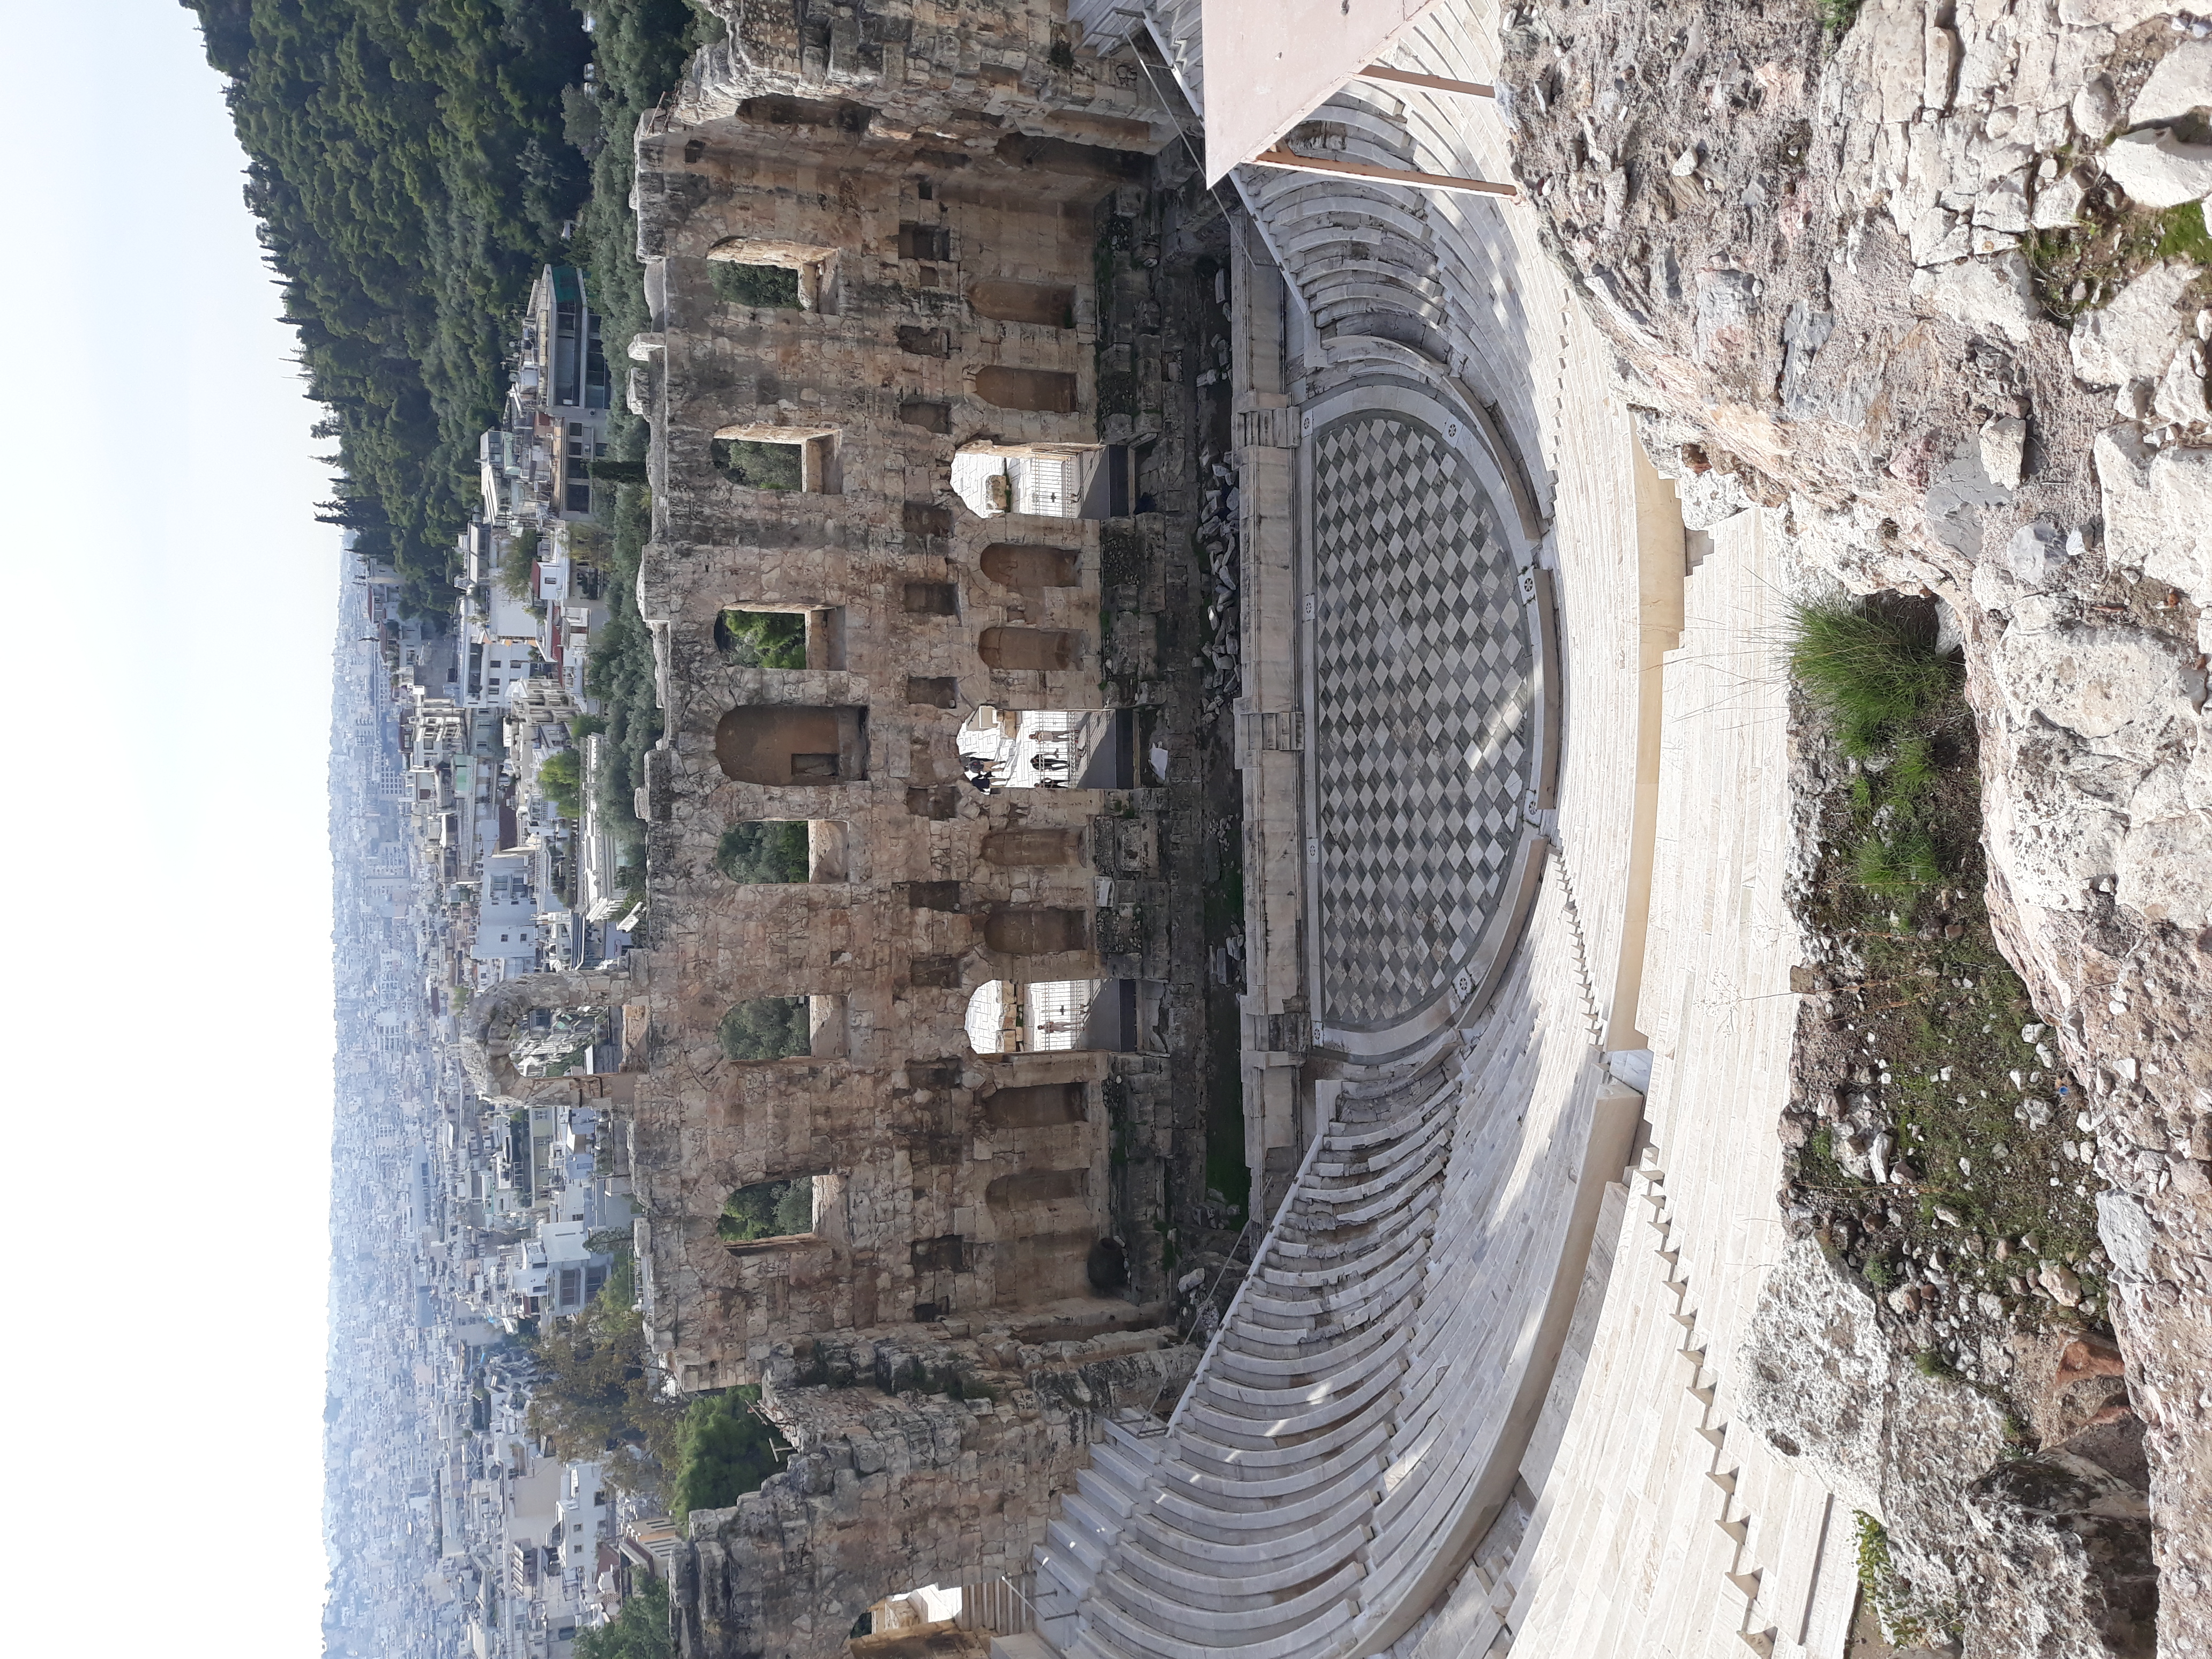 Akropolisz színház, kerékpártúrához túrákhoz társakat keresek